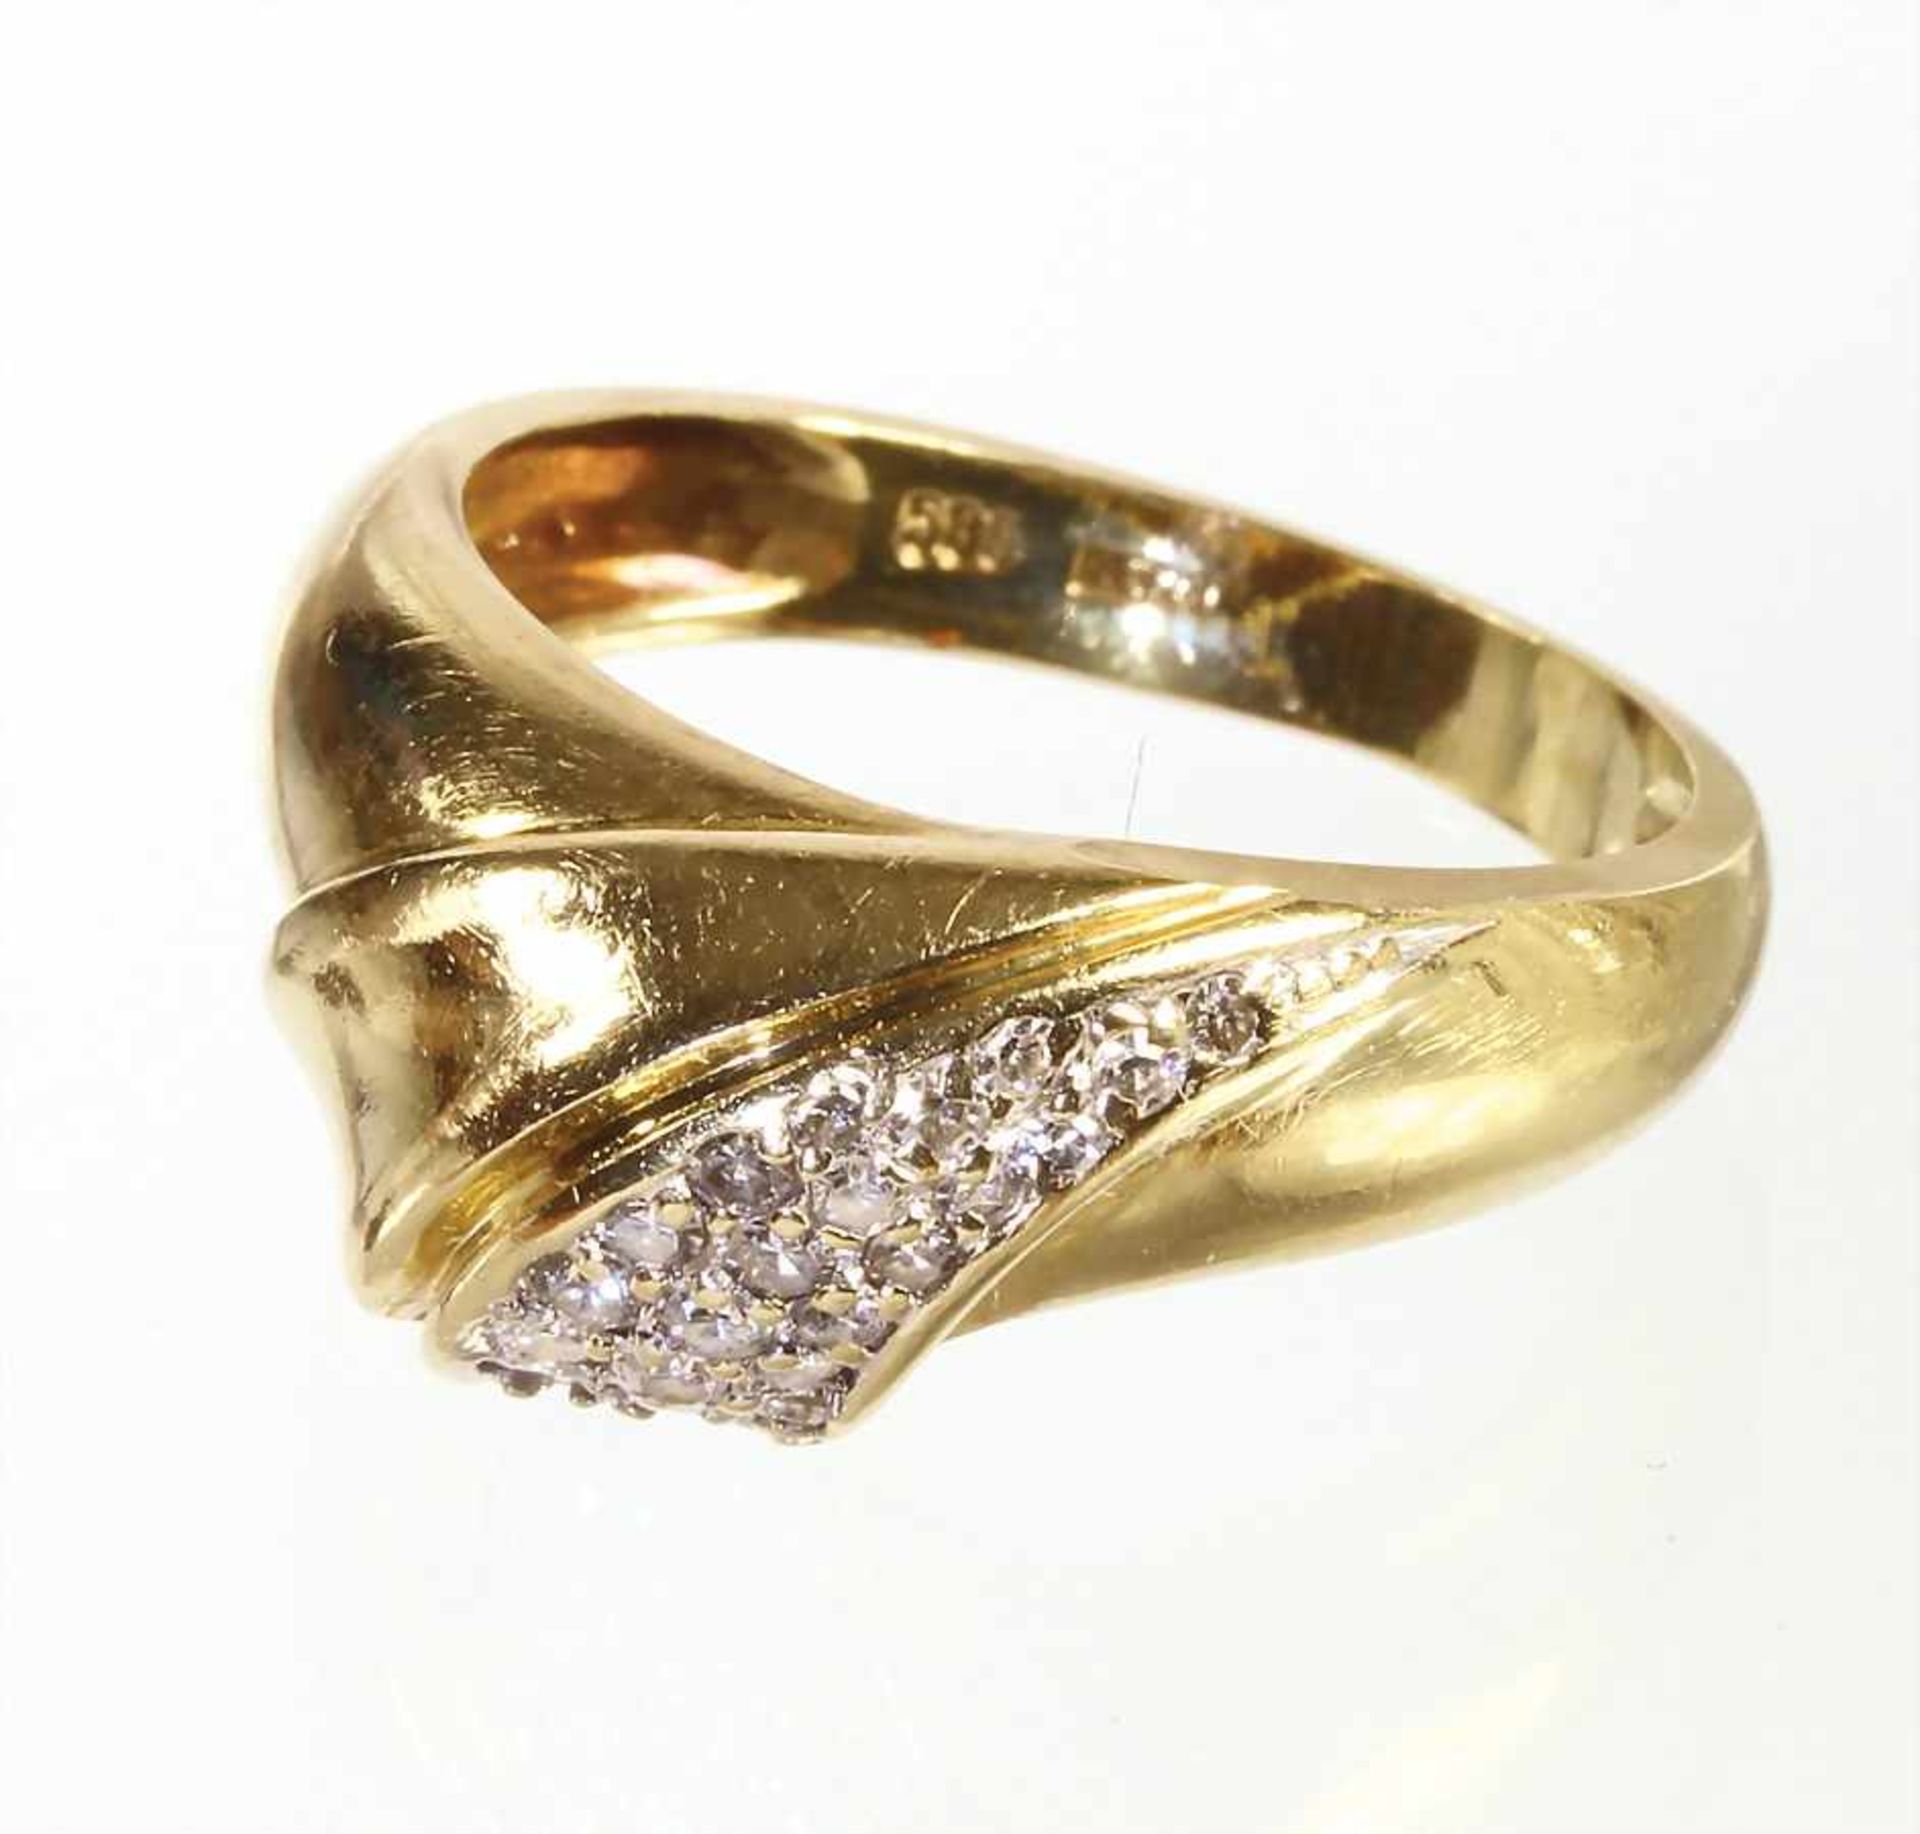 Ring, GG 585/000, 21 Brillanten/Diamanten weiß (Steine weiß gefasst), RW ca. 57